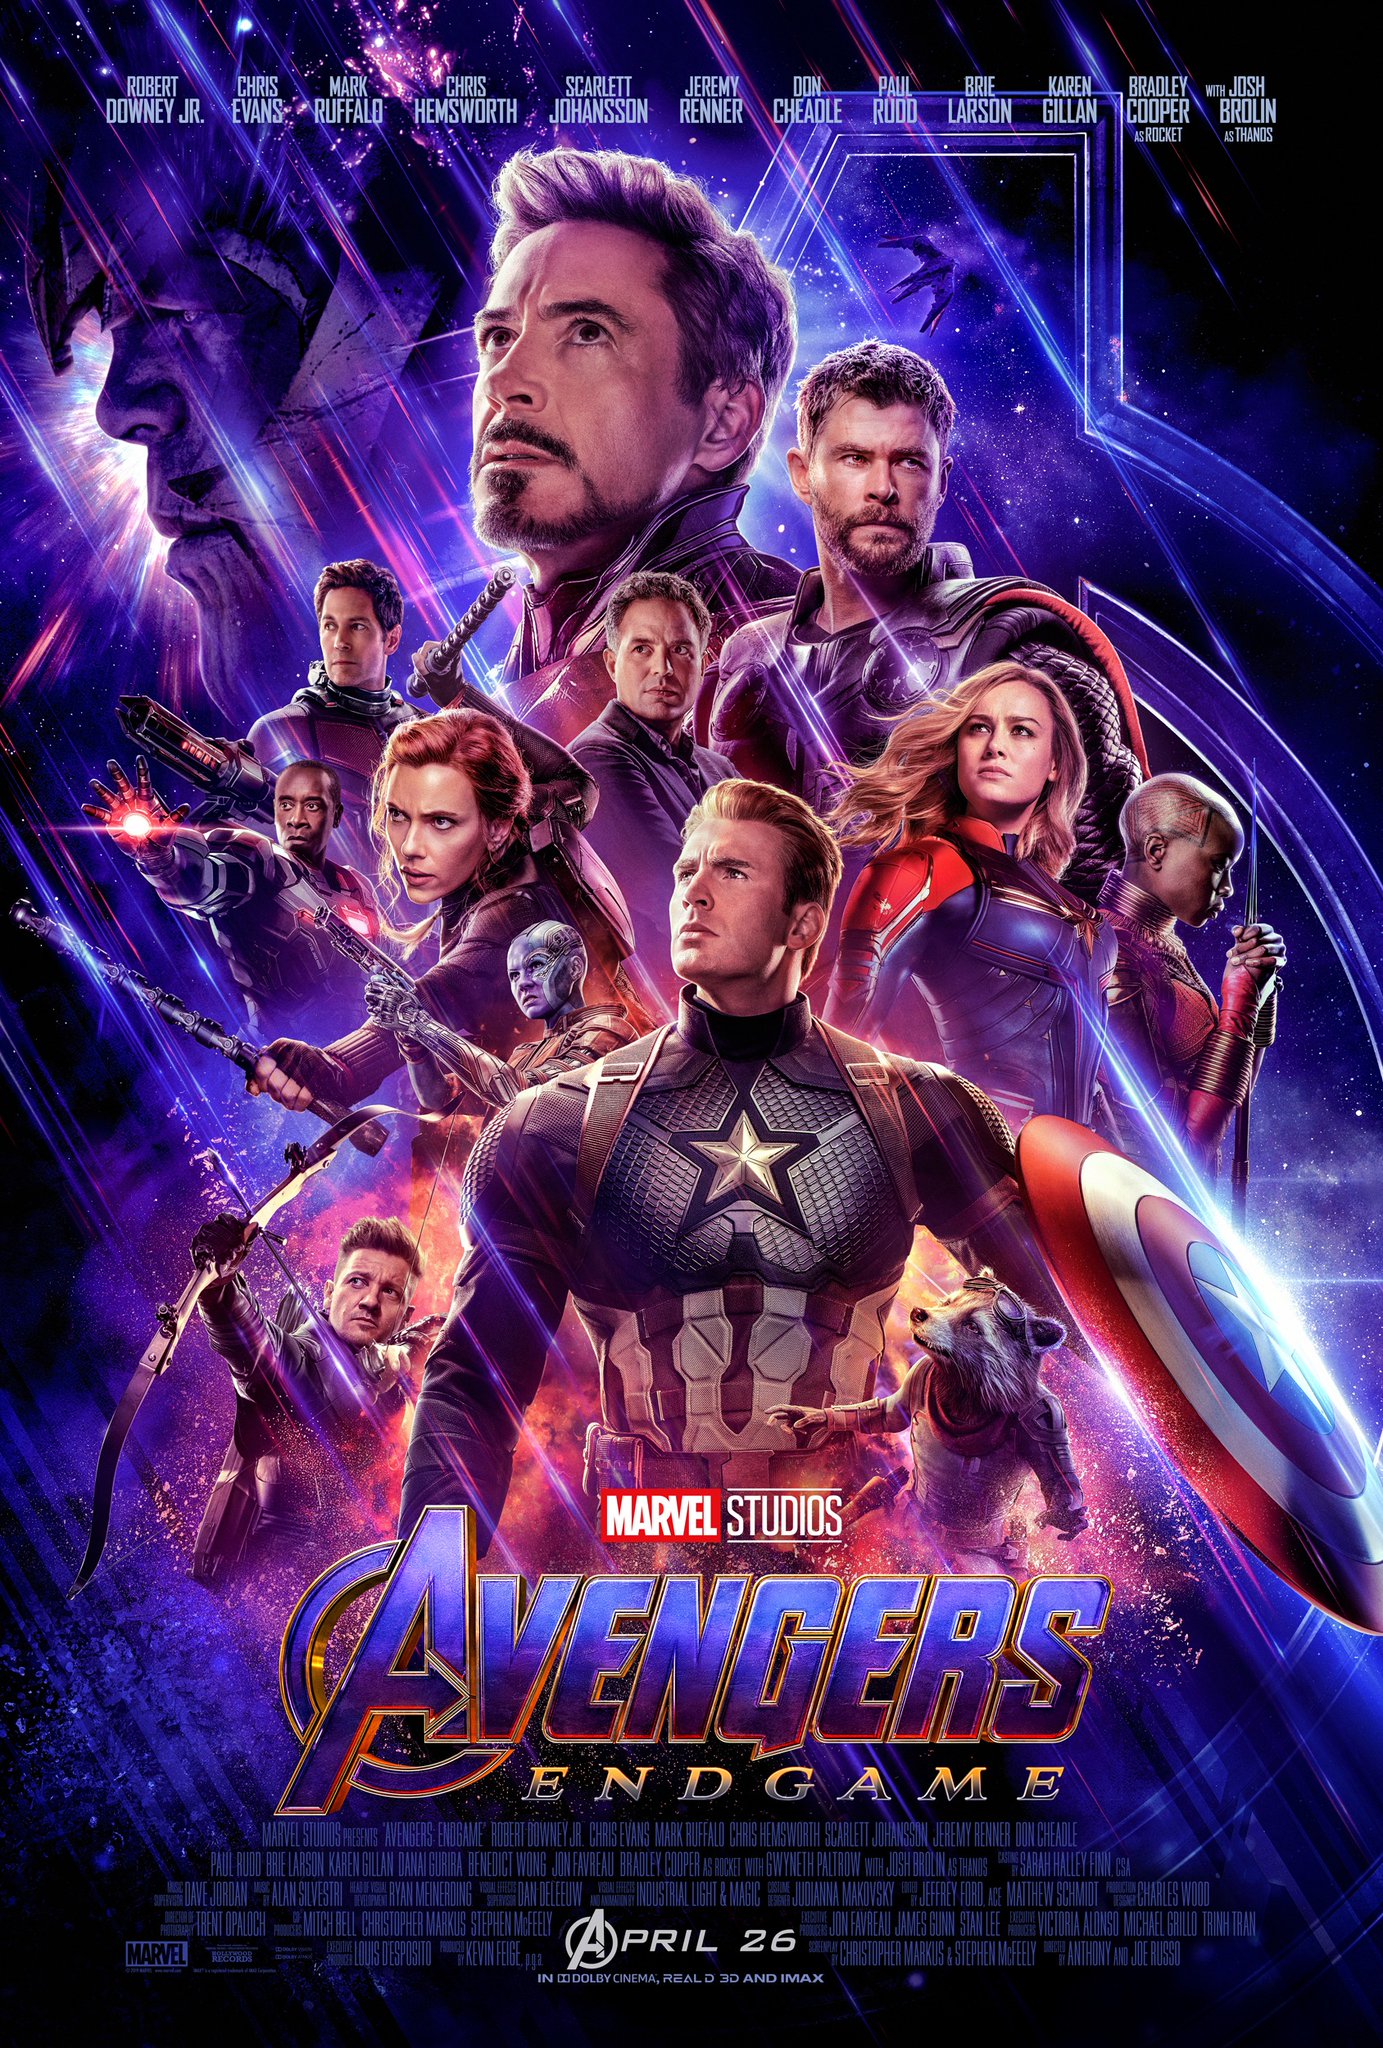 Marvel Studios Releases New Trailer, Poster For "Avengers 